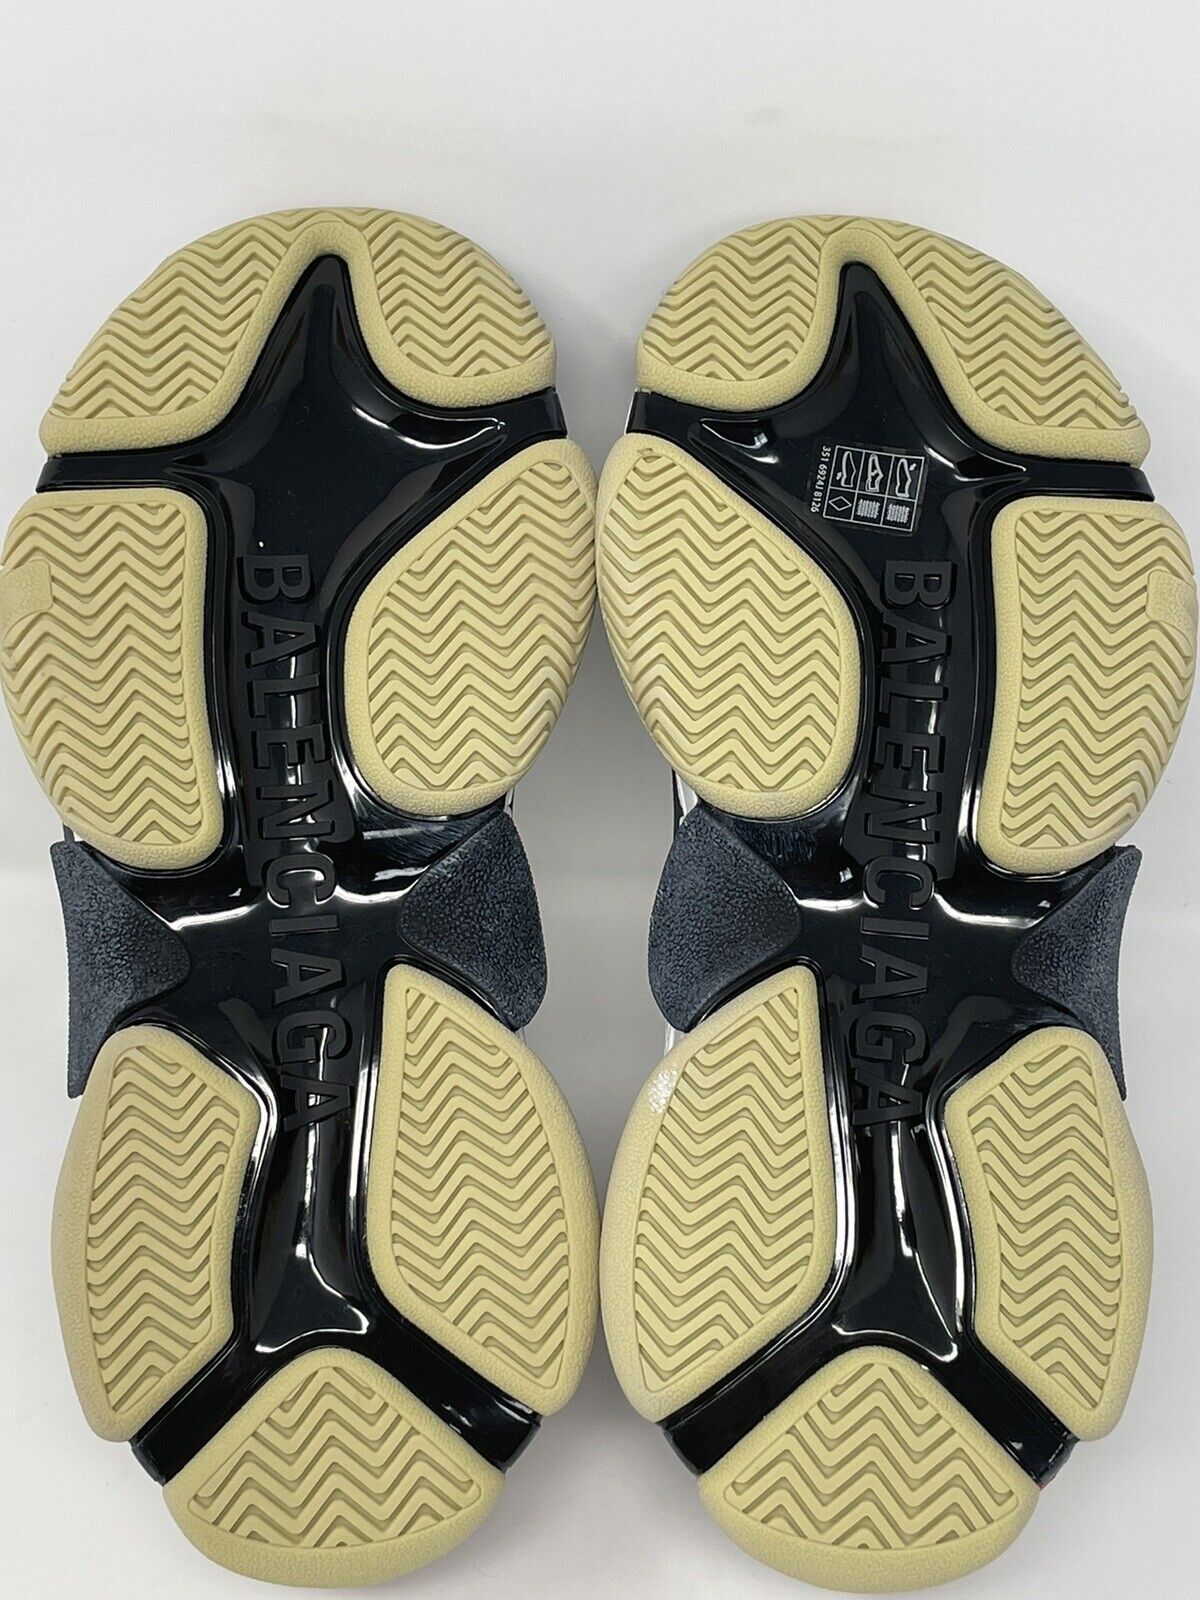 Gucci x Balenciaga Cream Floral Print Leather The Hacker Project Triple S  Sneakers Size 36 Gucci x Balenciaga